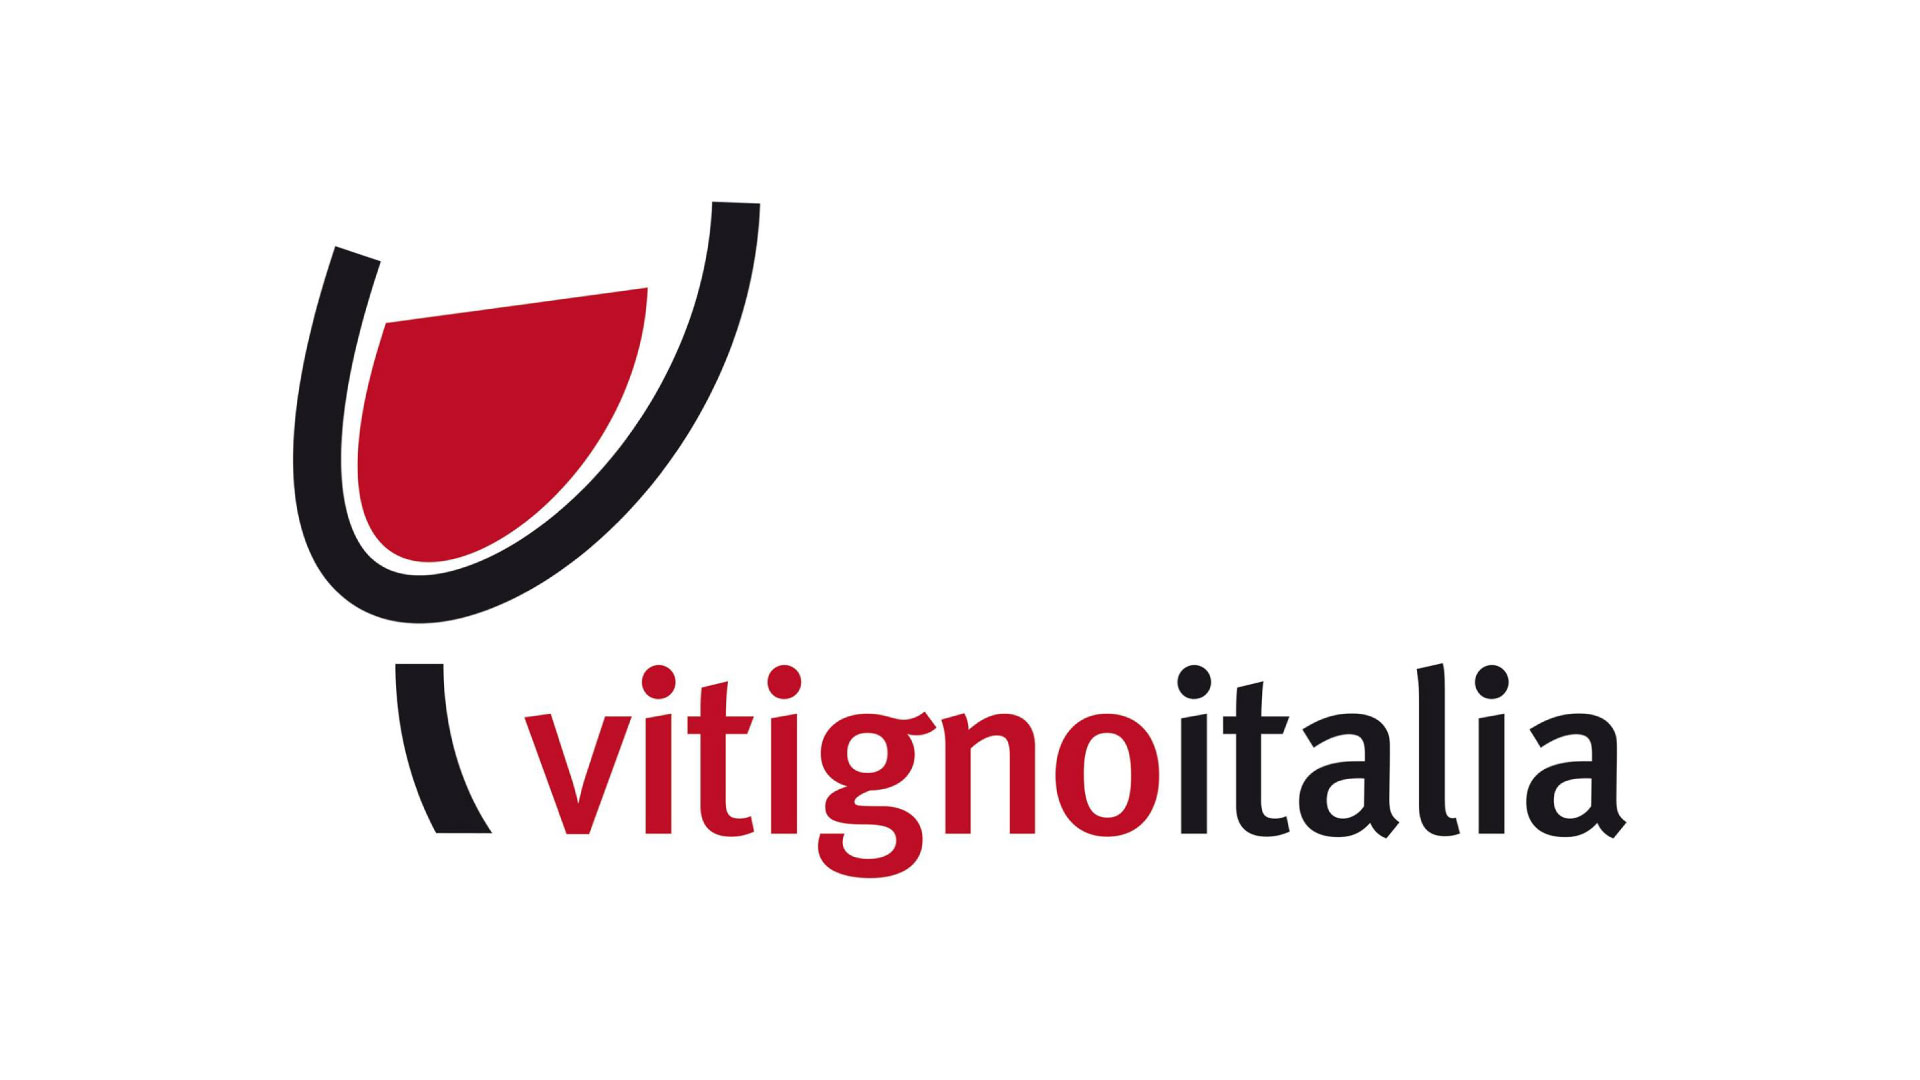 Vitigno Italia 2016 - XII salone dei vini e dei territori vitivinicoli italiani